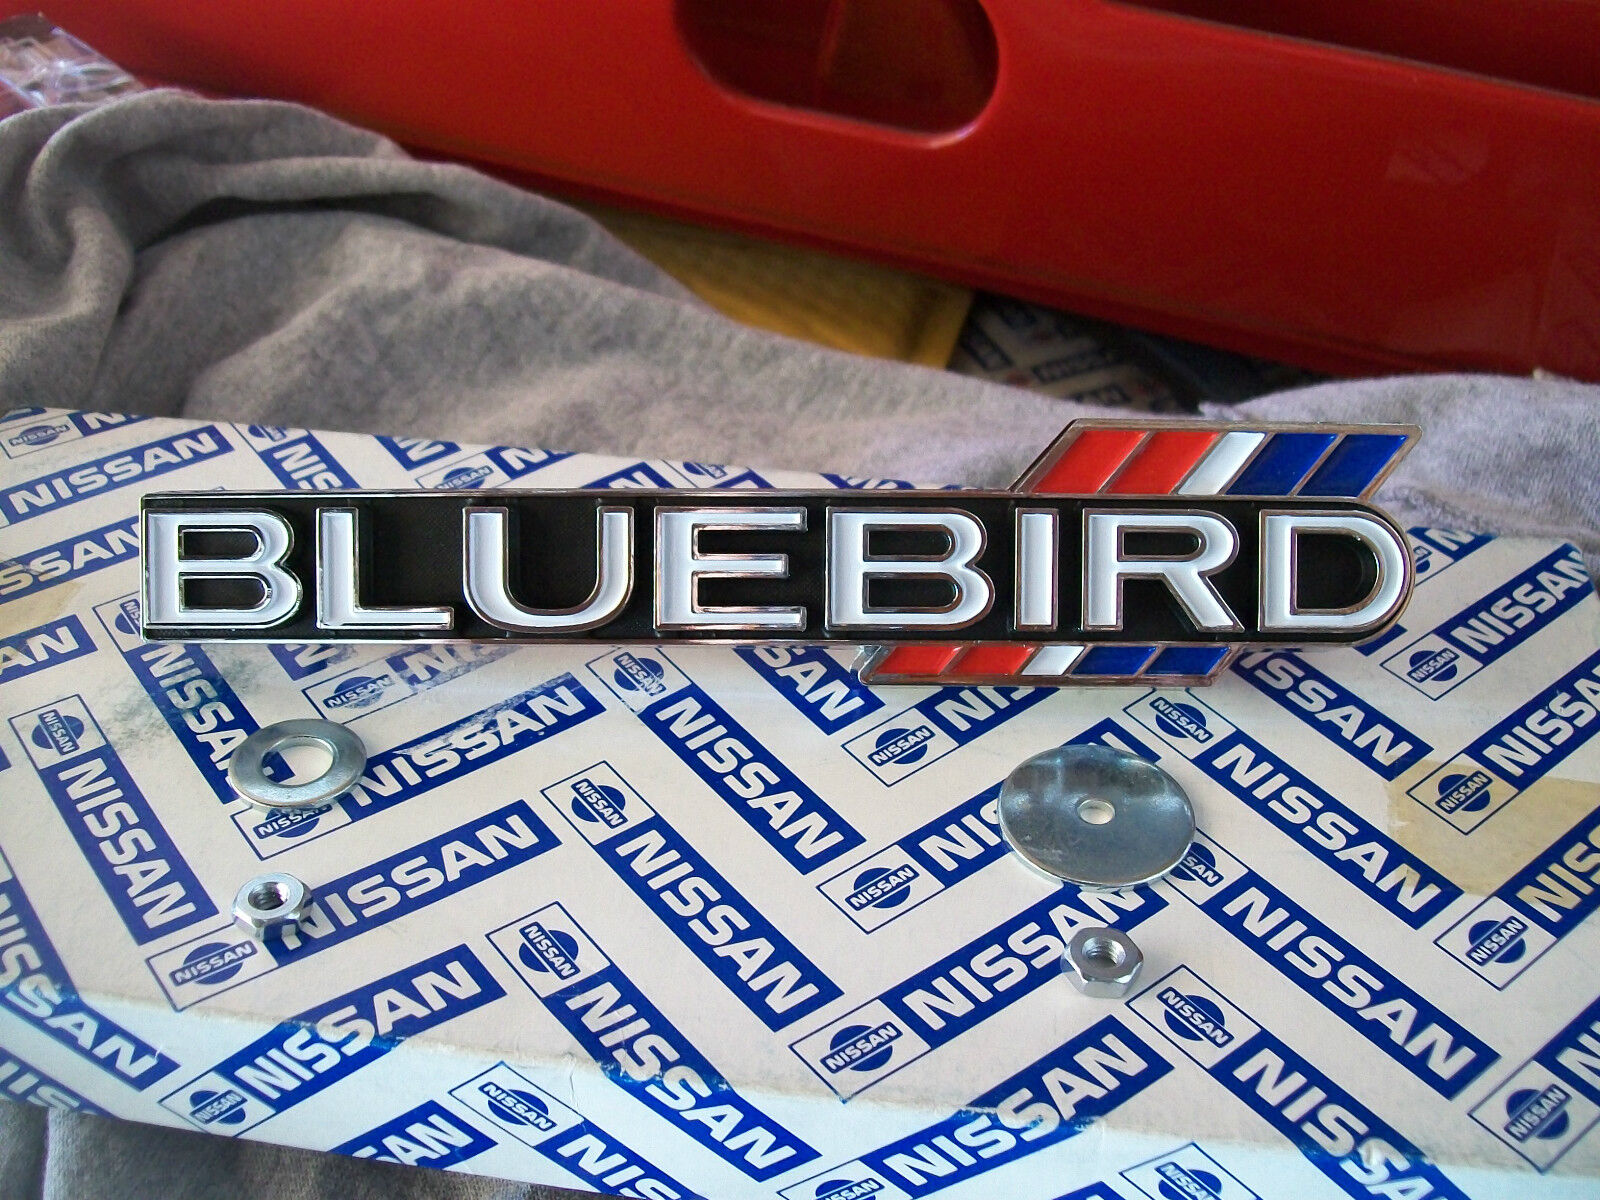  datsun bluebird 510 badge NEW JDM nissan japan RARE 1600 grille emblem